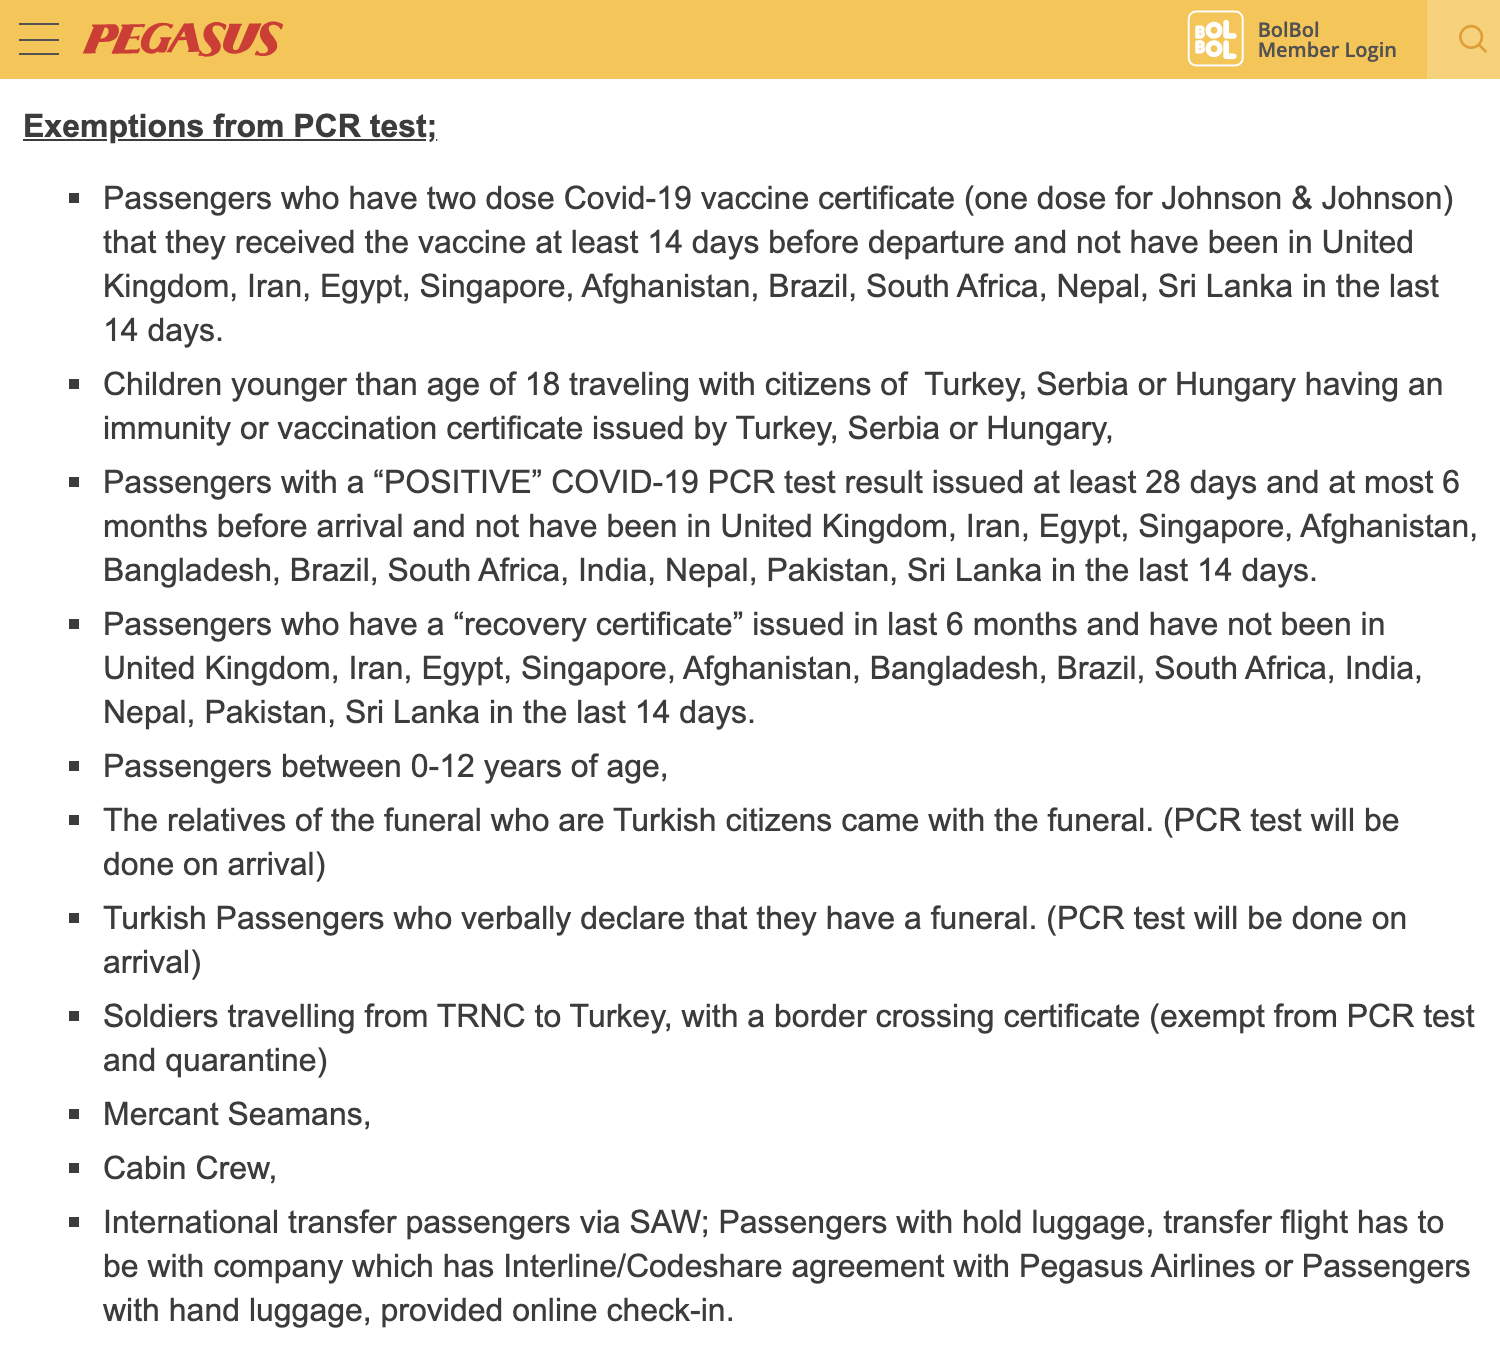 Авиакомпания Pegasus уточняет, что для въезда в Турцию из однокомпонентных вакцин подойдет только Johnson & Johnson